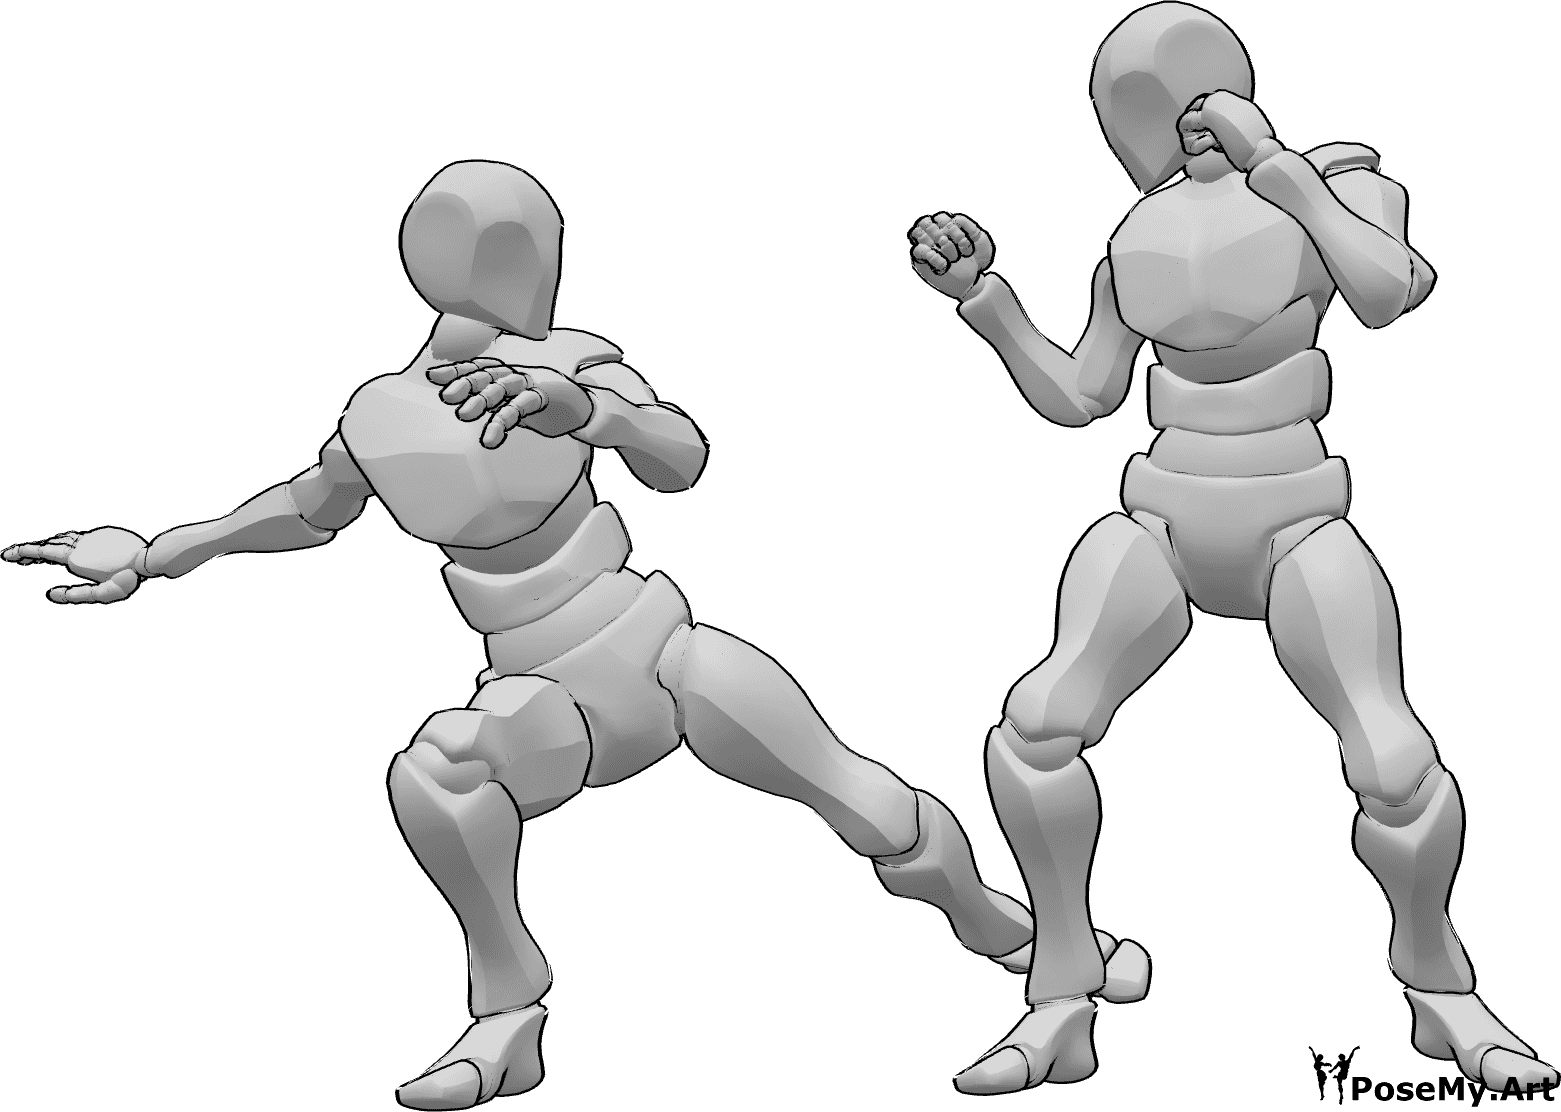 Referência de poses- Homem em pose de ataque com pontapés - Homem ataca o outro homem, pontapeando a sua perna direita, referência de pose de ataque masculino